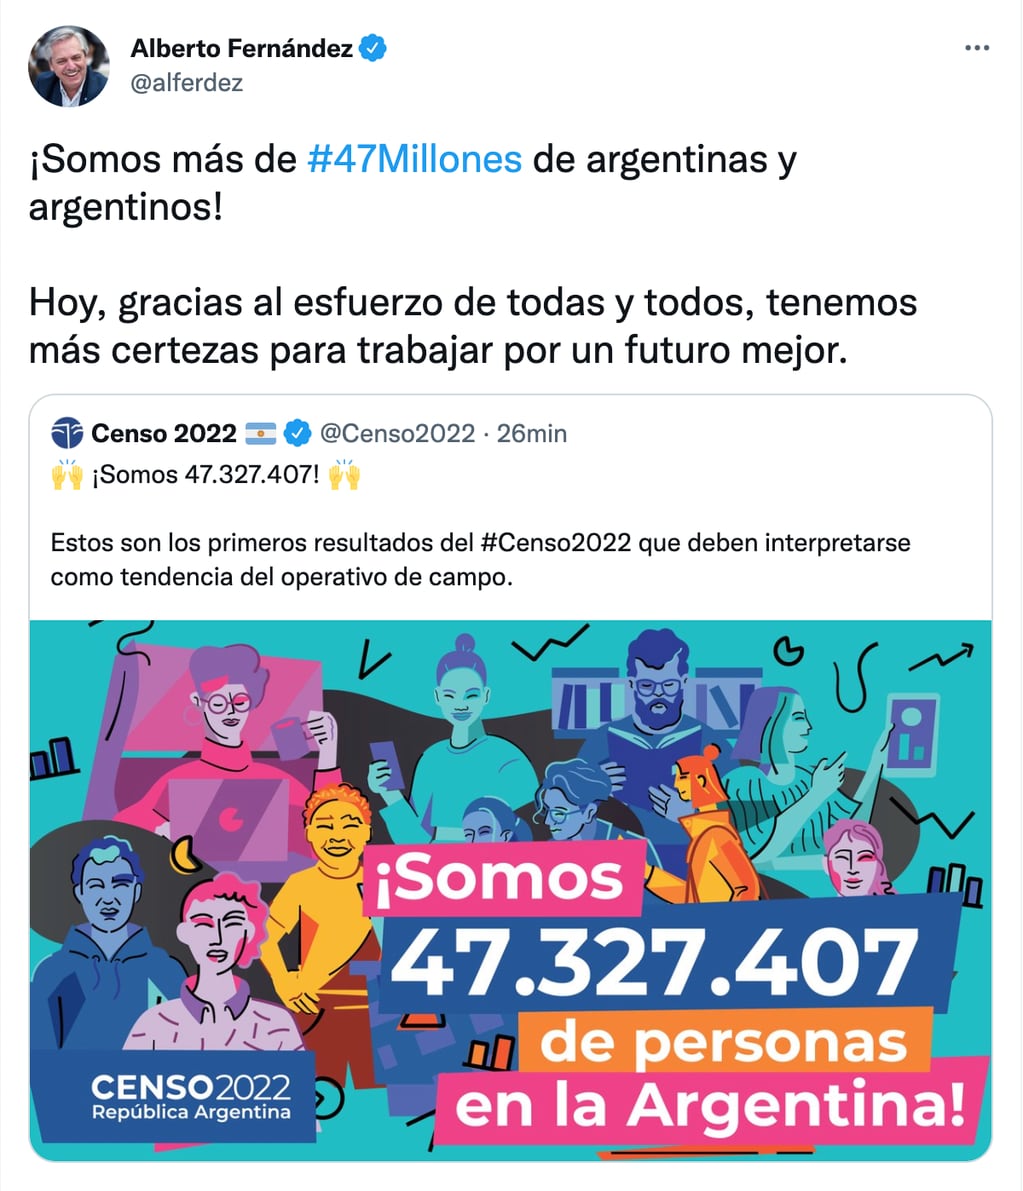 Mensaje del presidente Alberto Fernández sobre el resultado del Censo que indica que en Argentina hay más de 47 millones de habitantes.